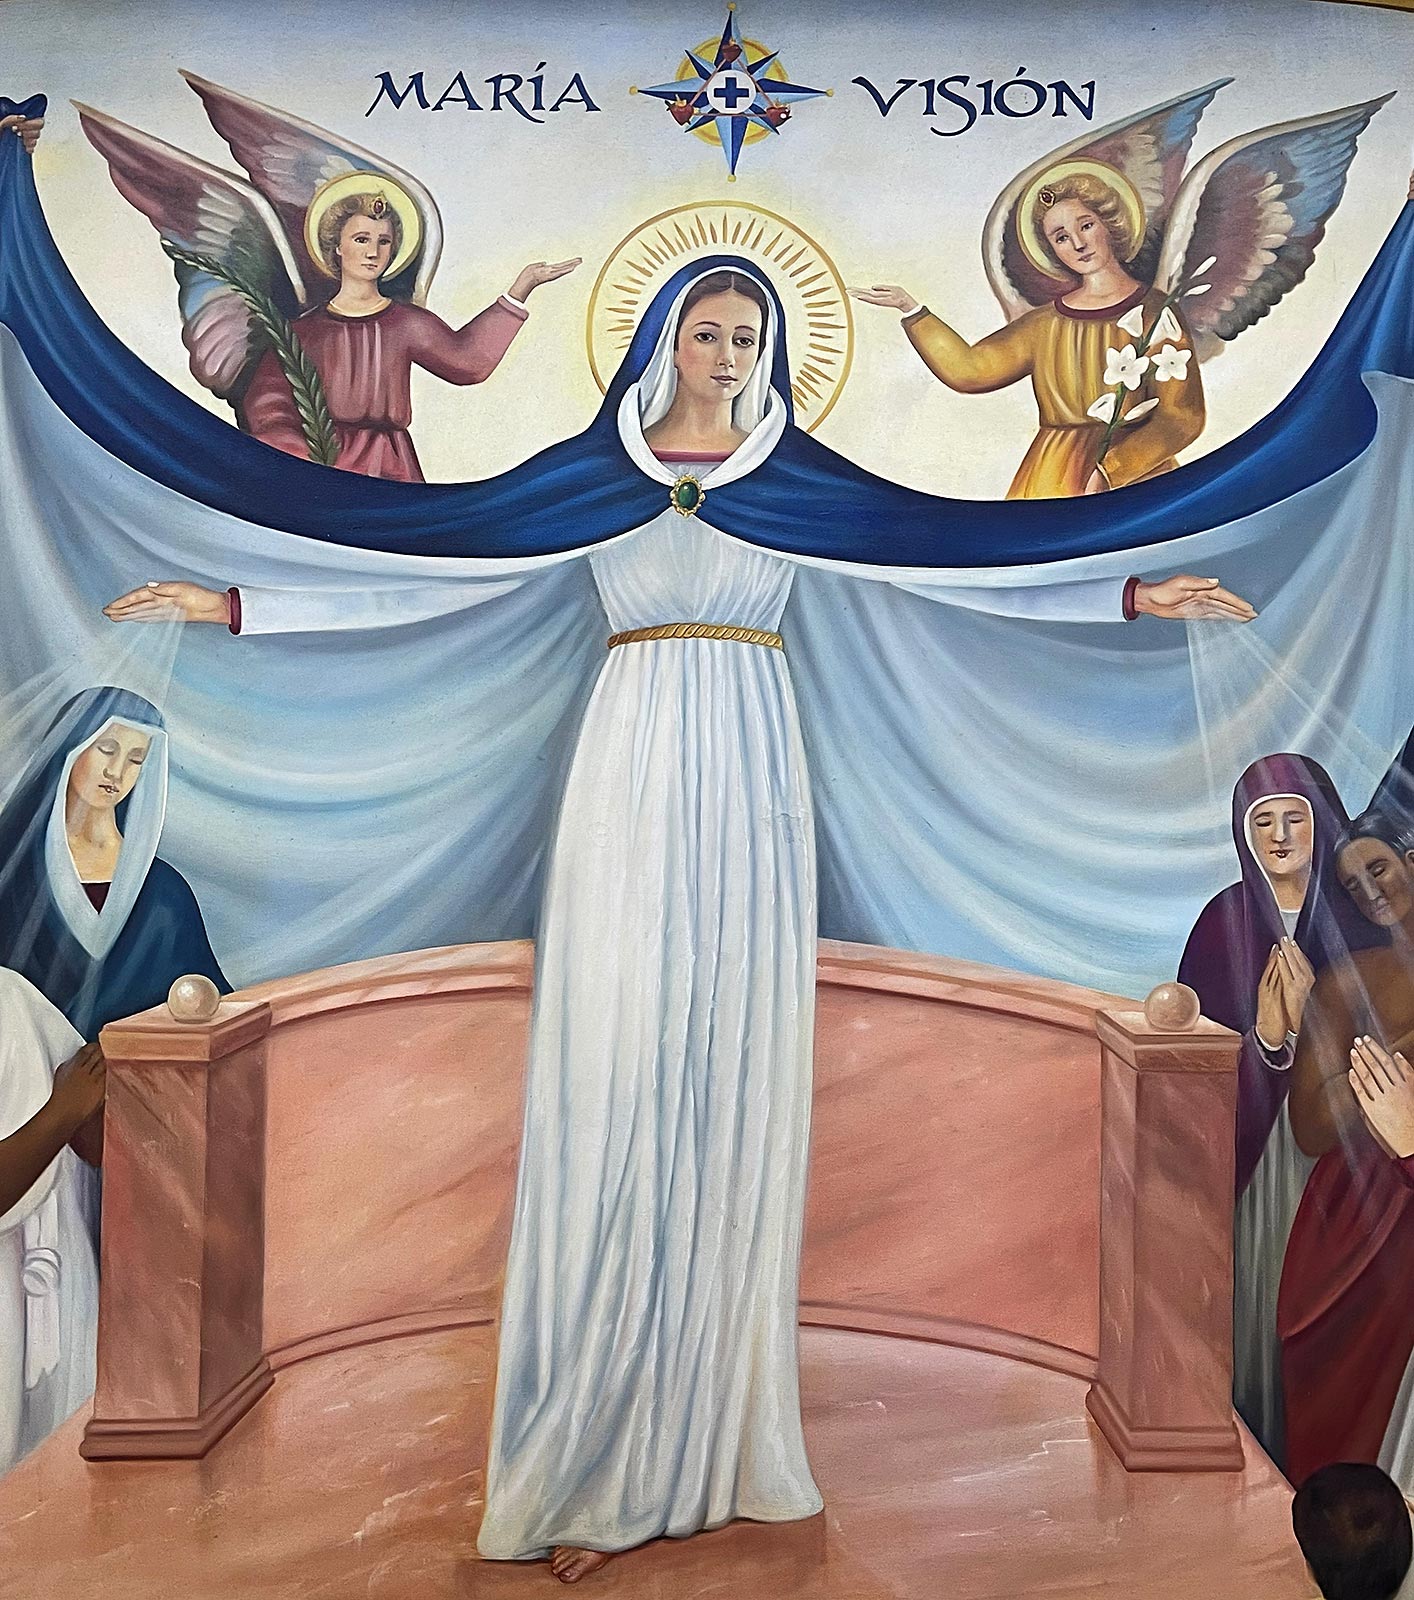 Dipinto di Maria, centro mariano vicino alla Basilica di Nostra Signora di Zapopan, Guadalajara